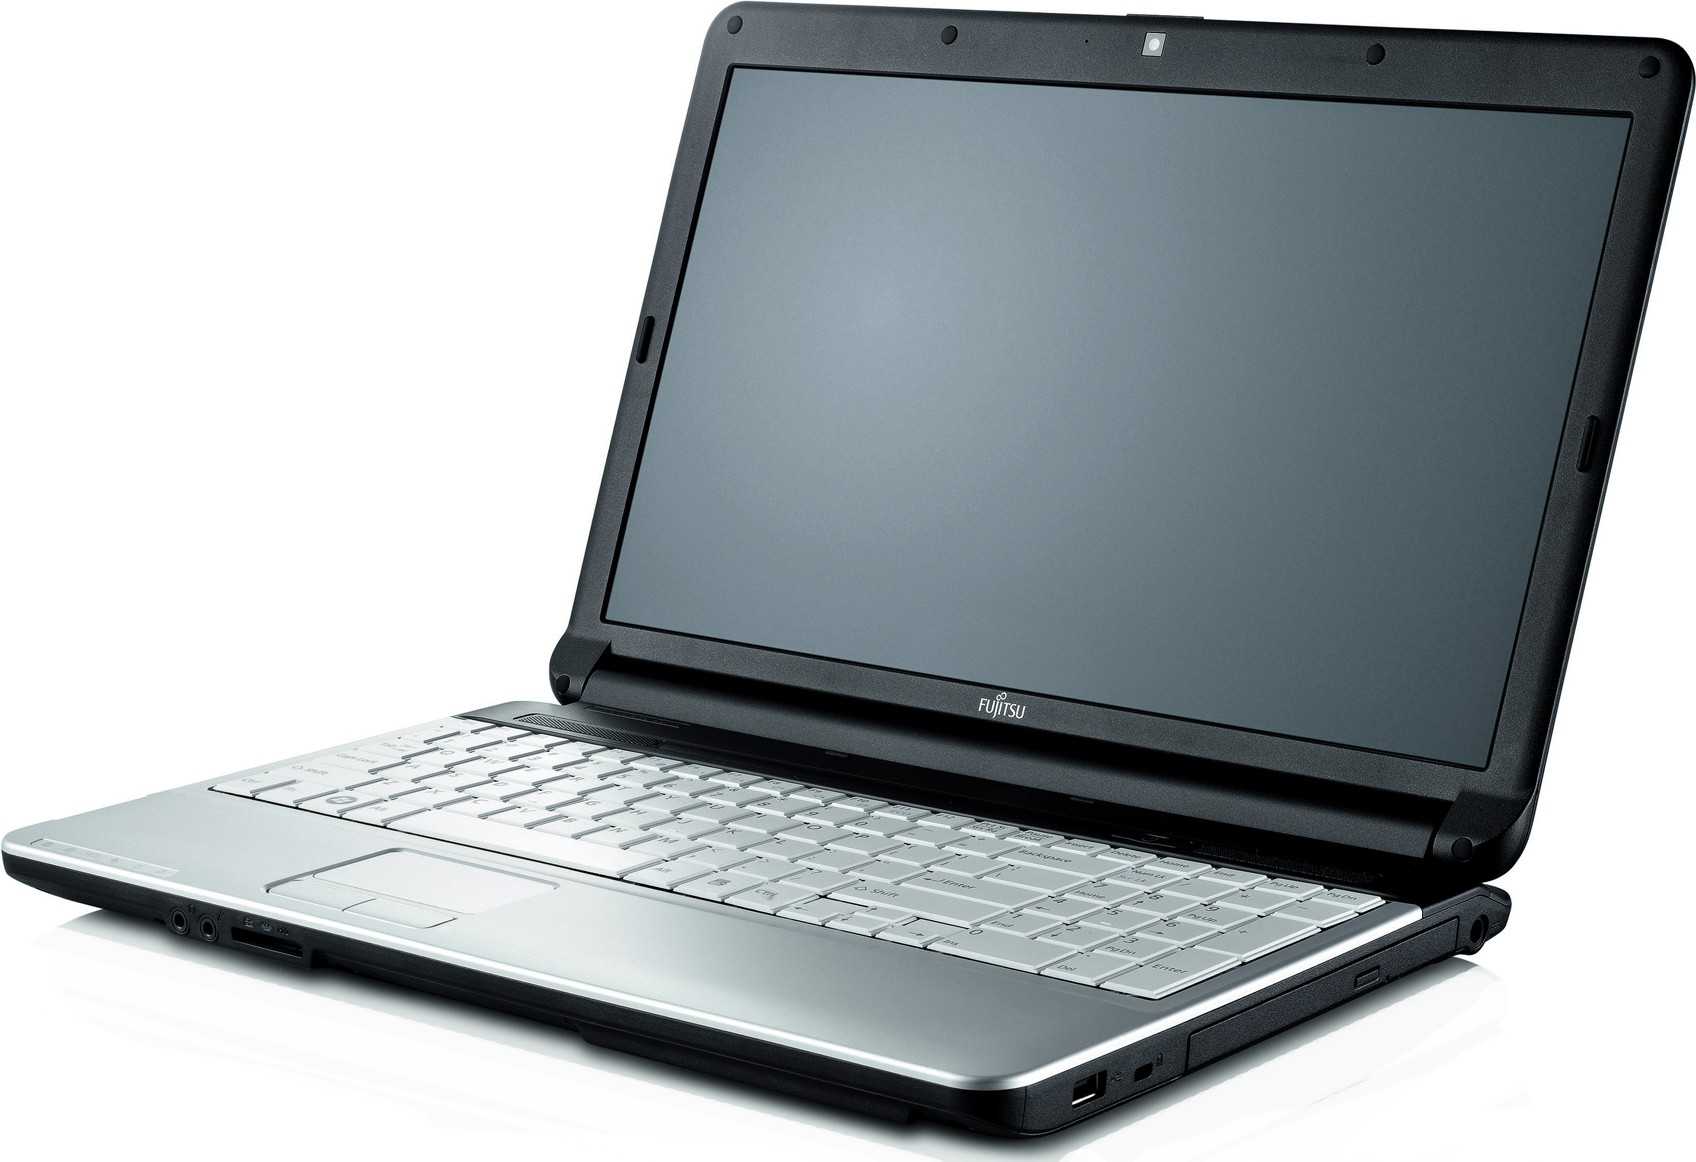 Обзор fujitsu lifebook nh532. производительный 17.3-дюймовый ноутбук с хорошим экраном